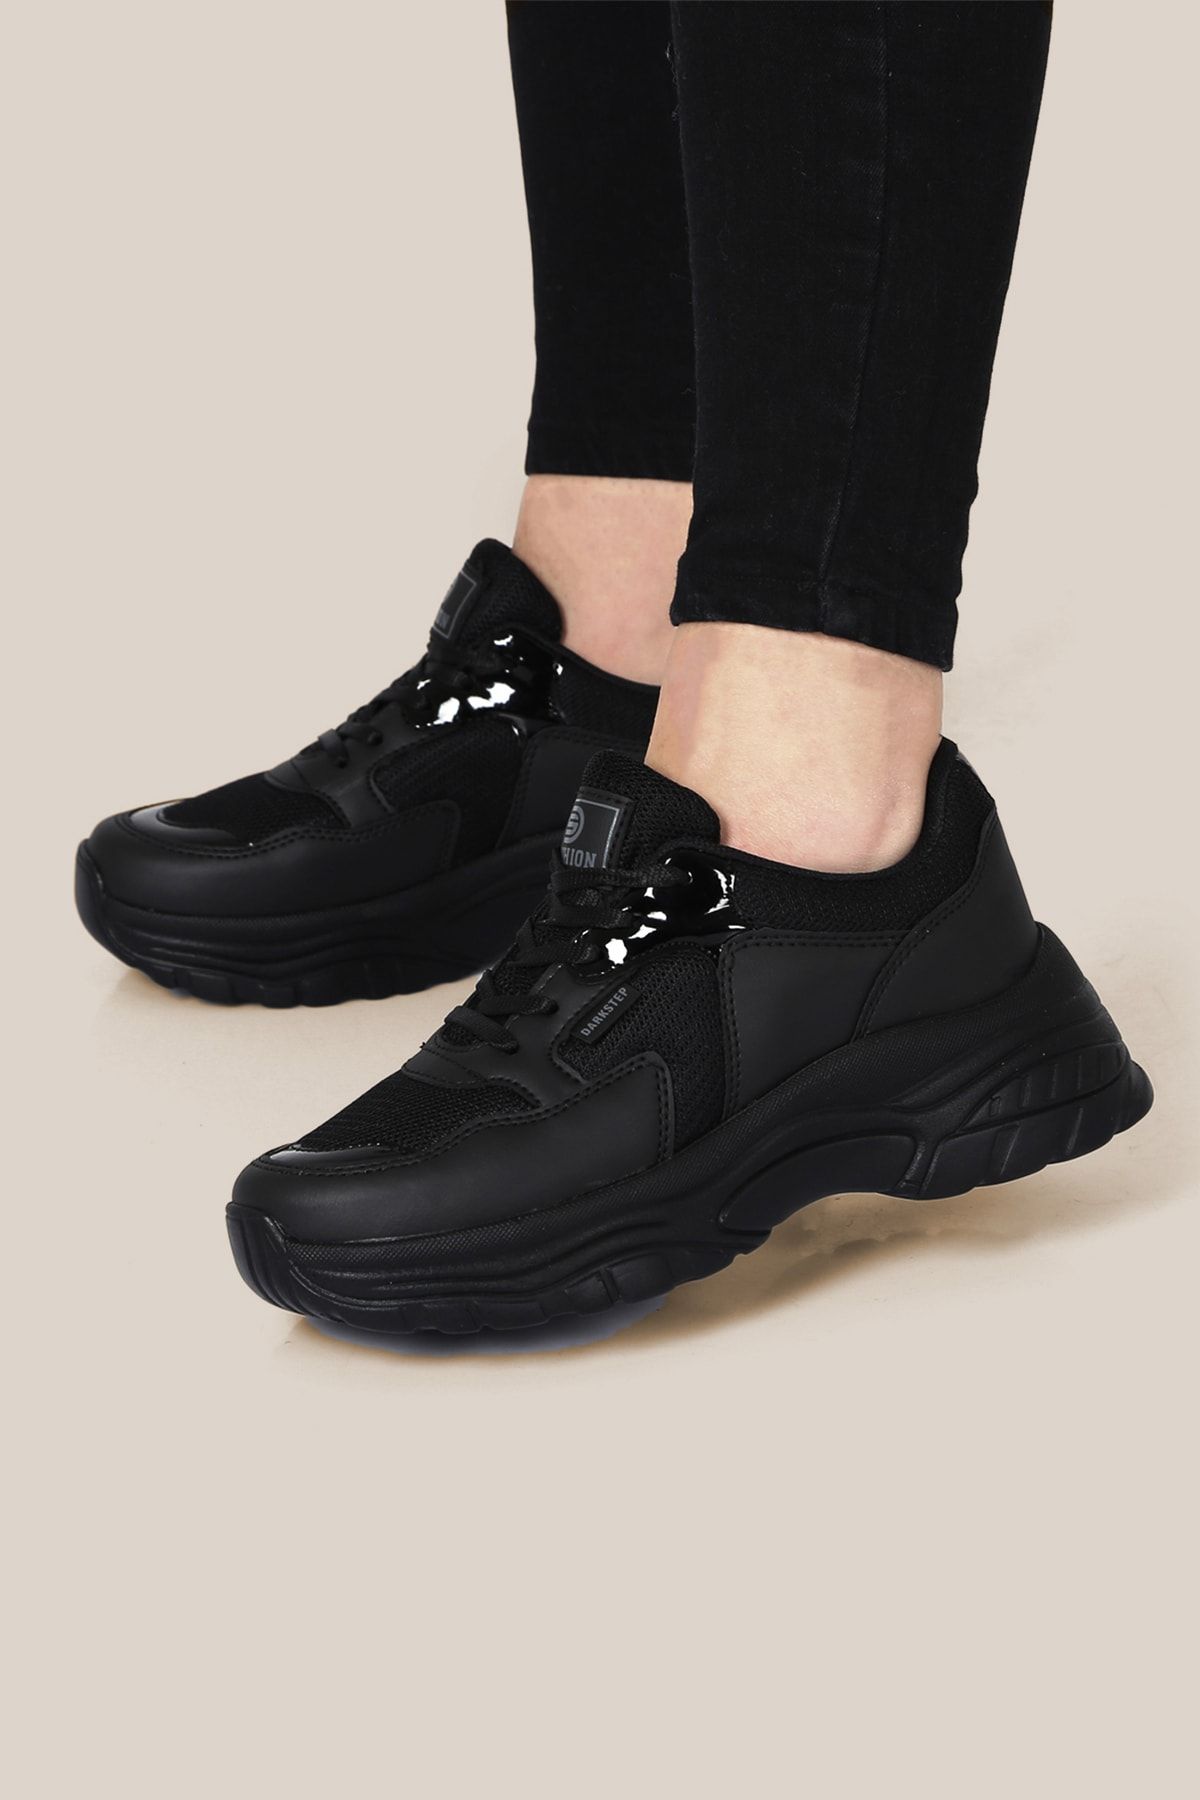 ICELAKE Unisex Siyah Sneaker Y01ls106